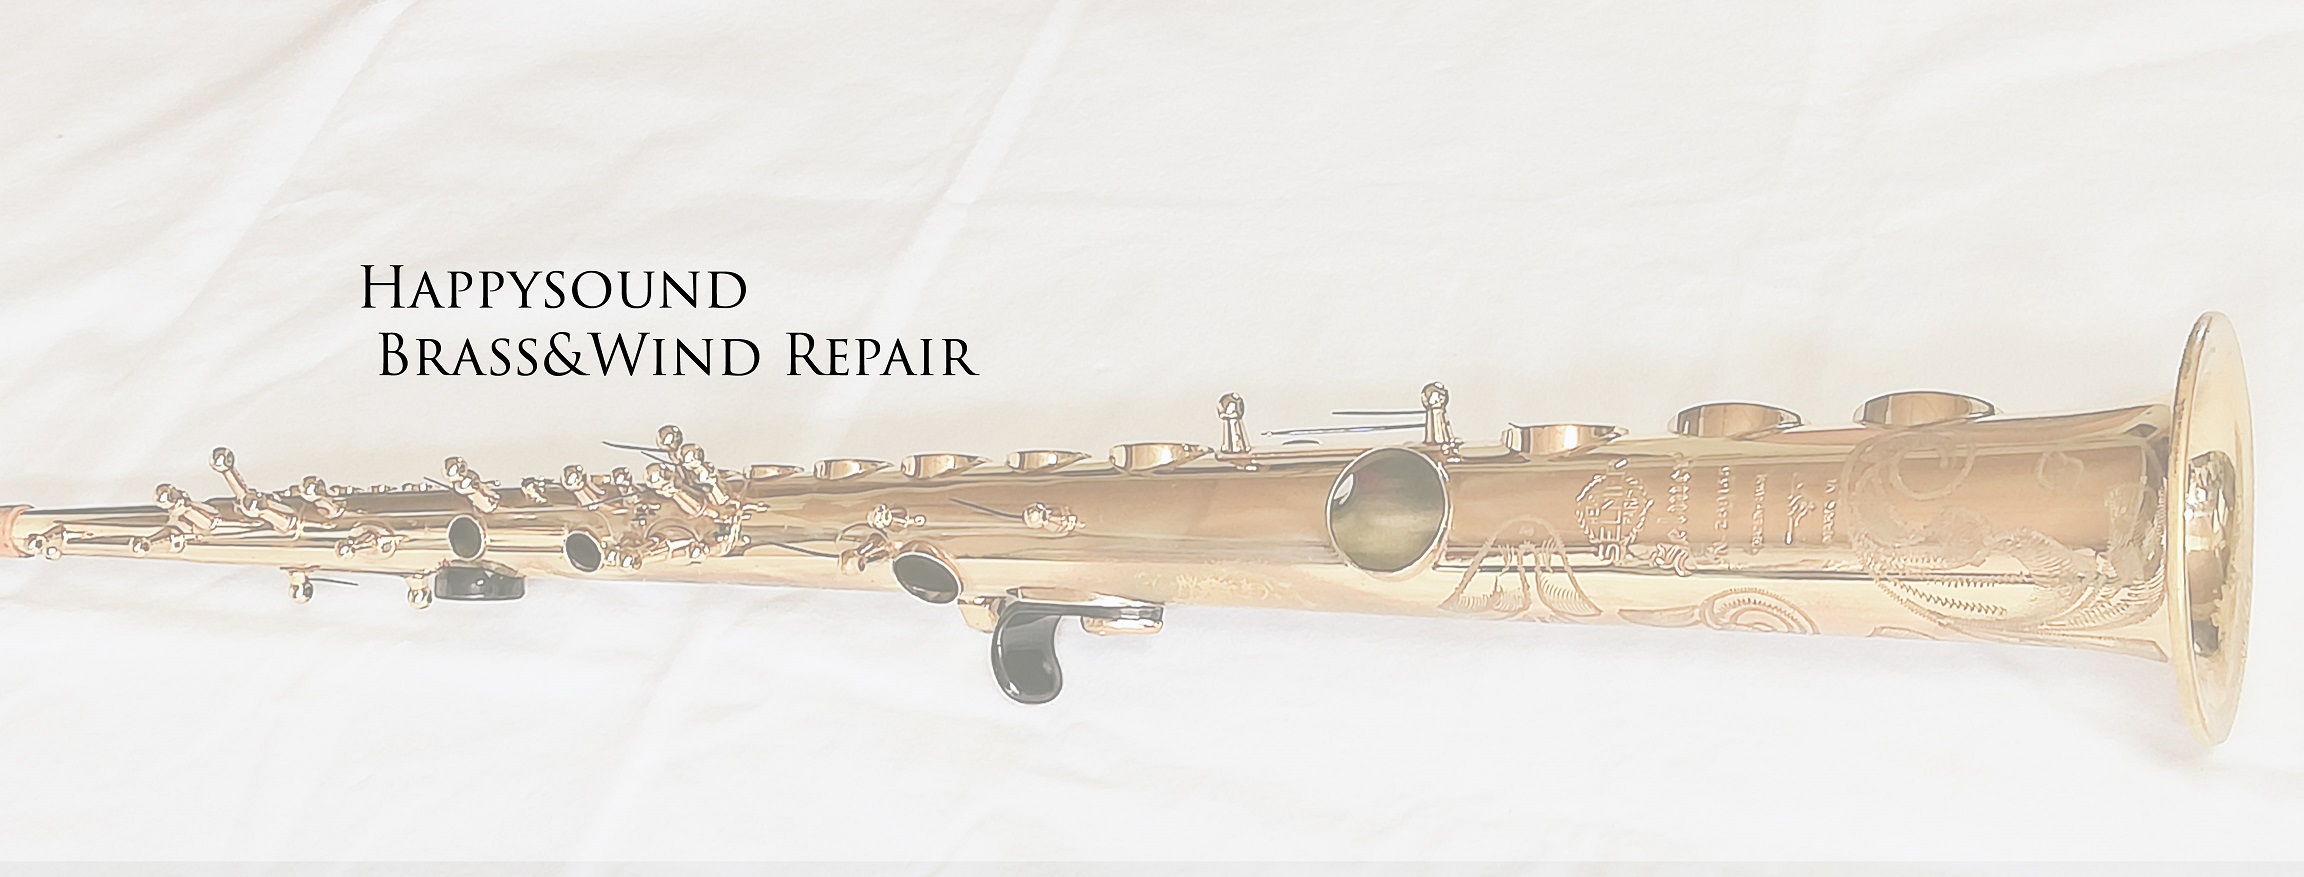 サックス 修理 - 管楽器修理工房 Happysound BrassWind Repair ハッピーサウンド